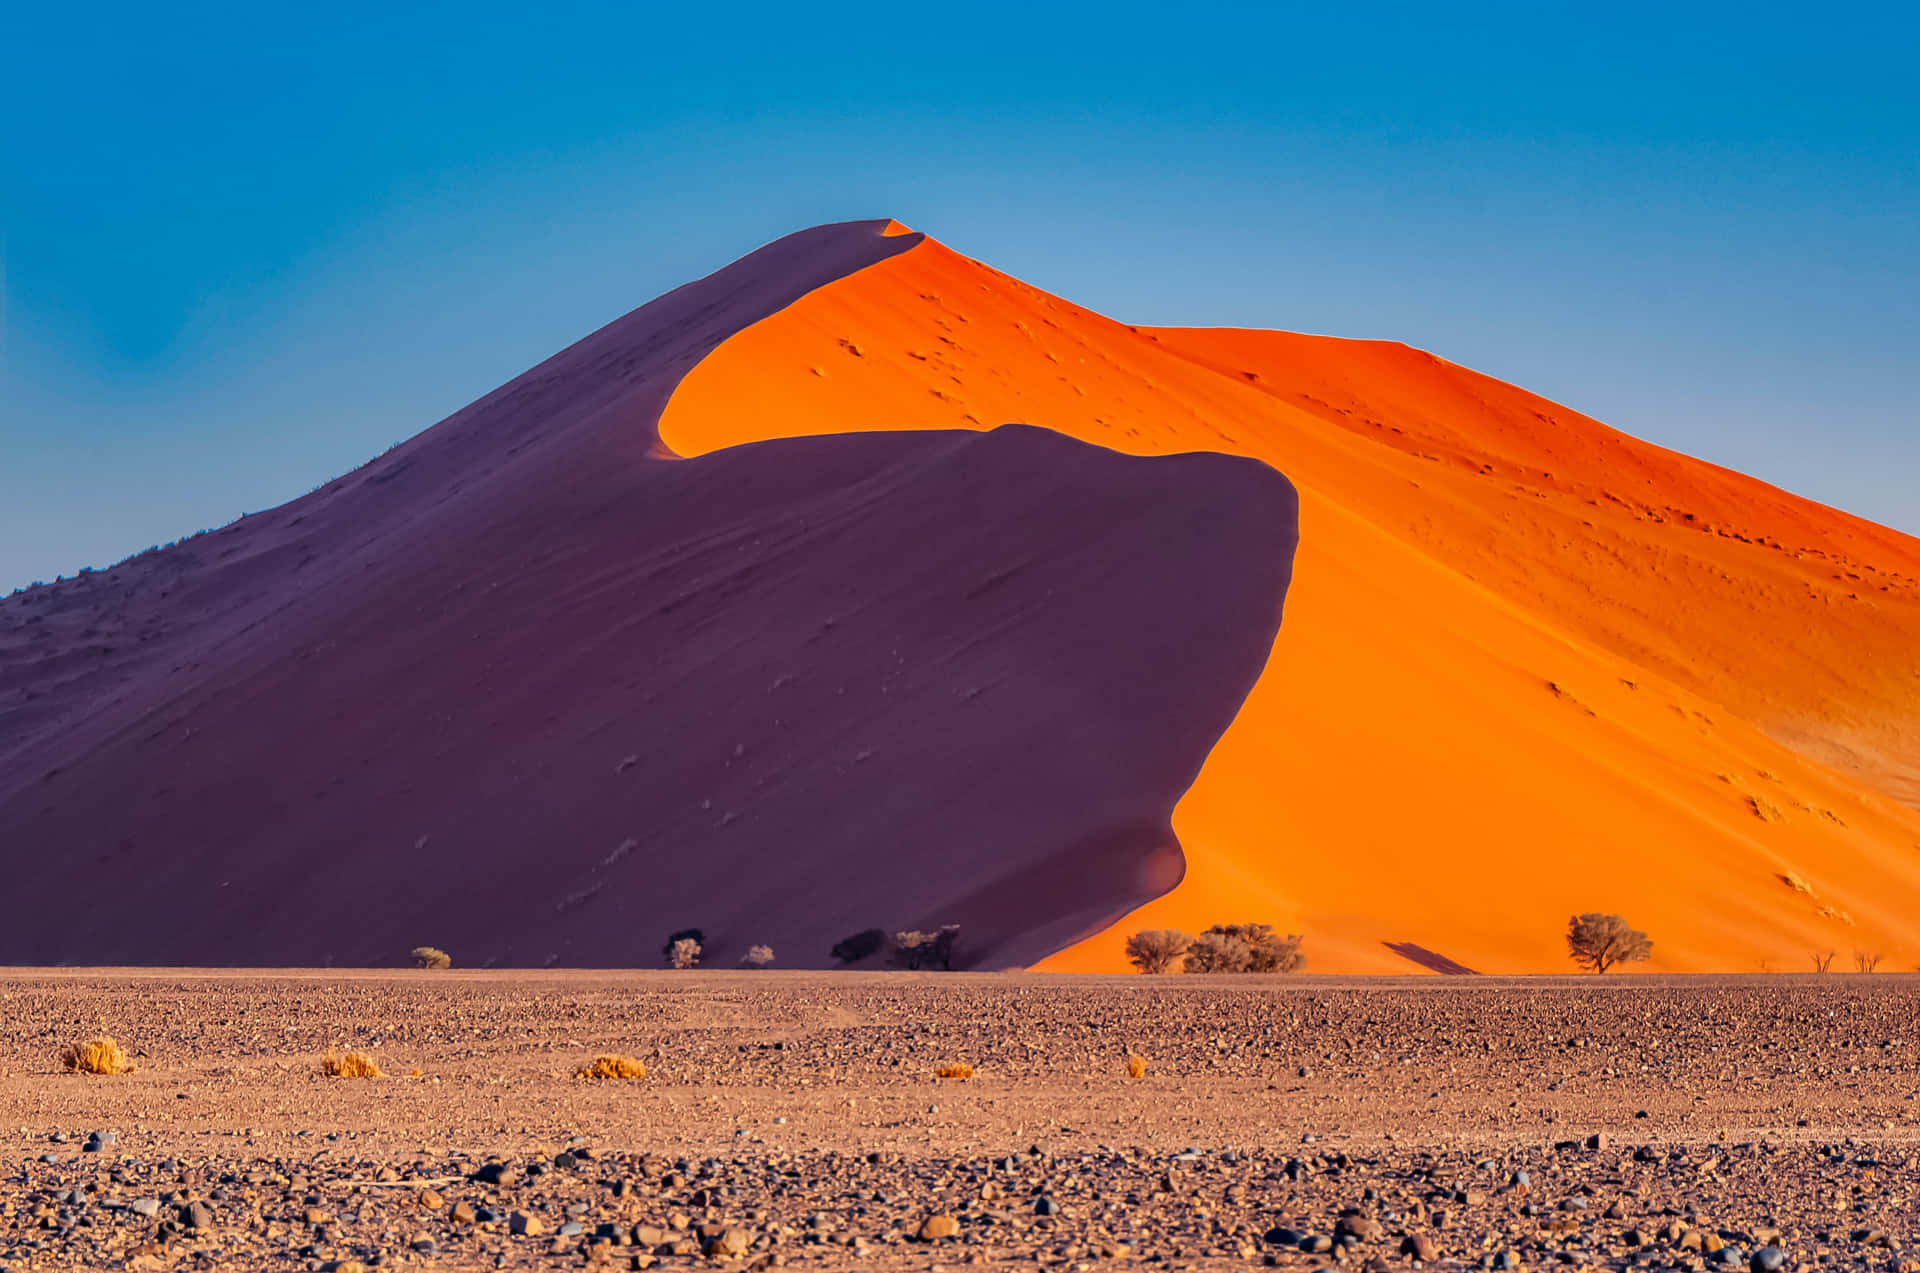 Förundradig Över Den Häpnadsväckande Skönheten I En Sanddyne-öken.